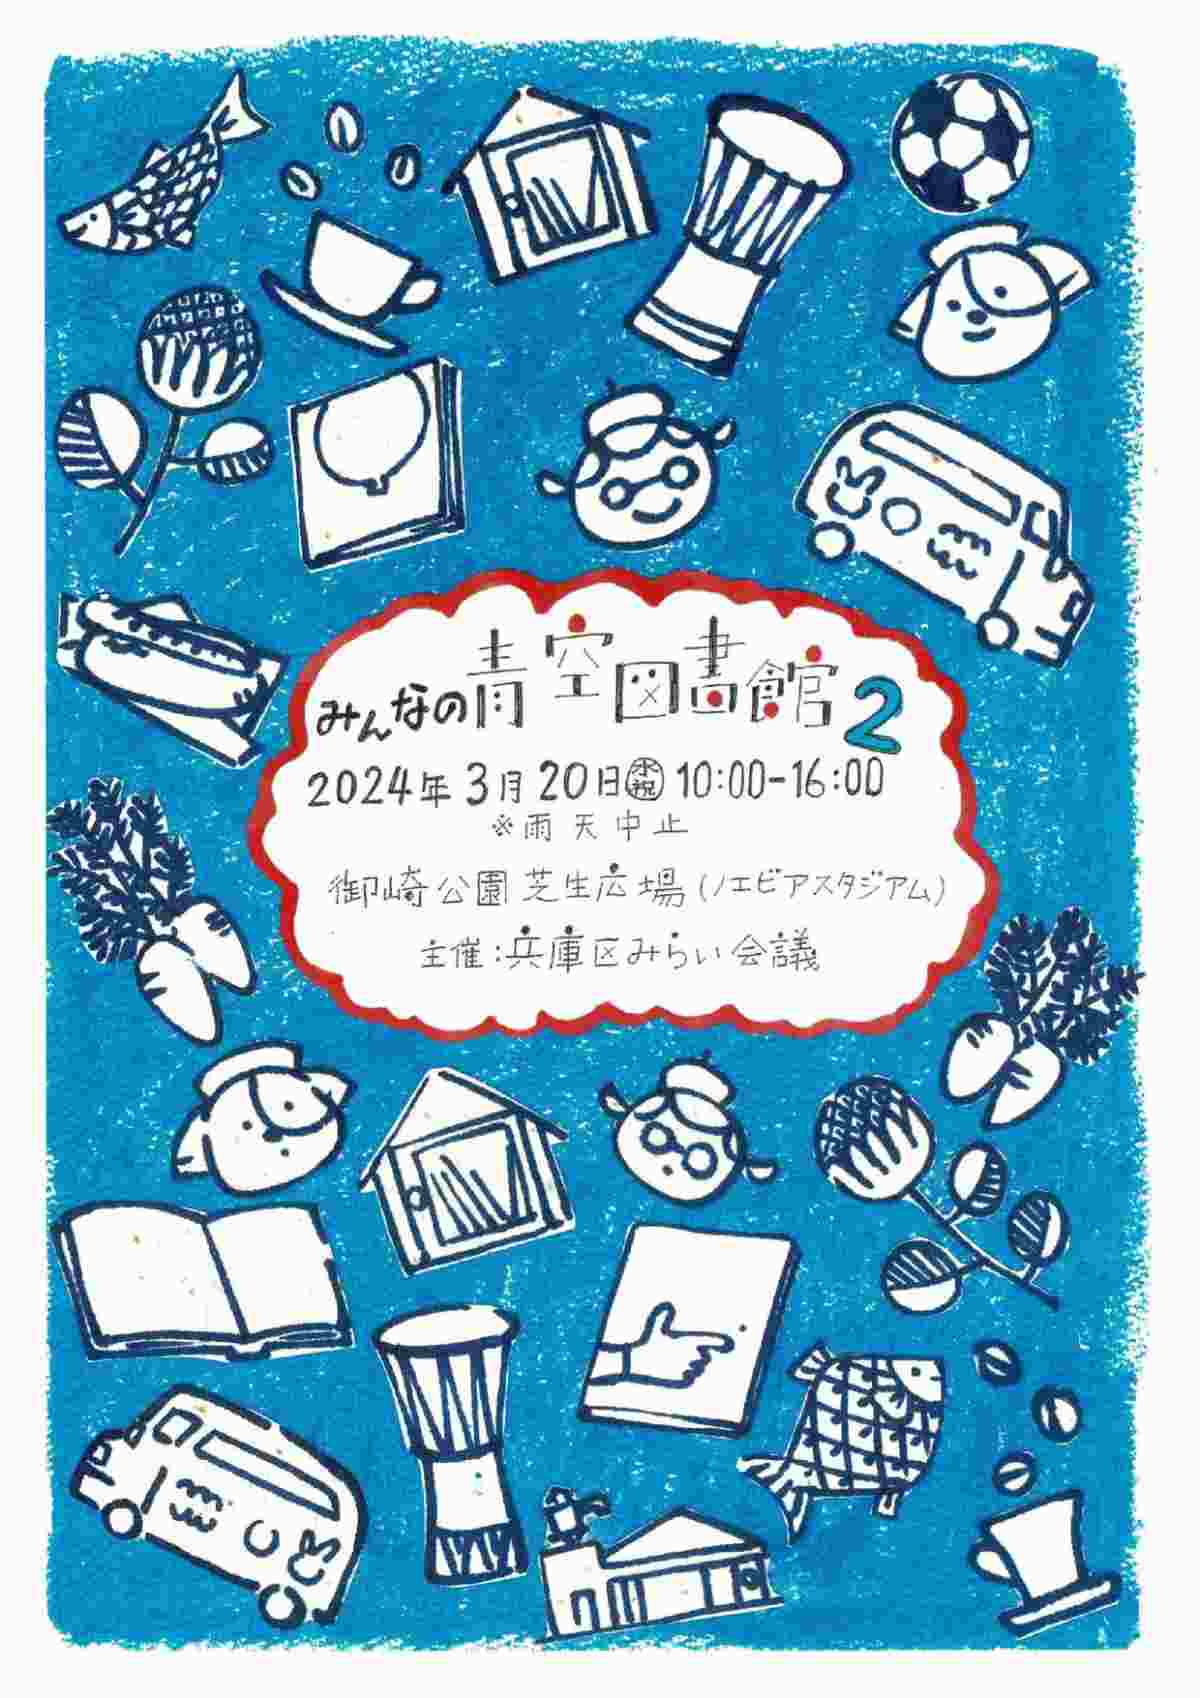 御崎公園で「みんなの青空図書館」開催　神戸市 [画像]